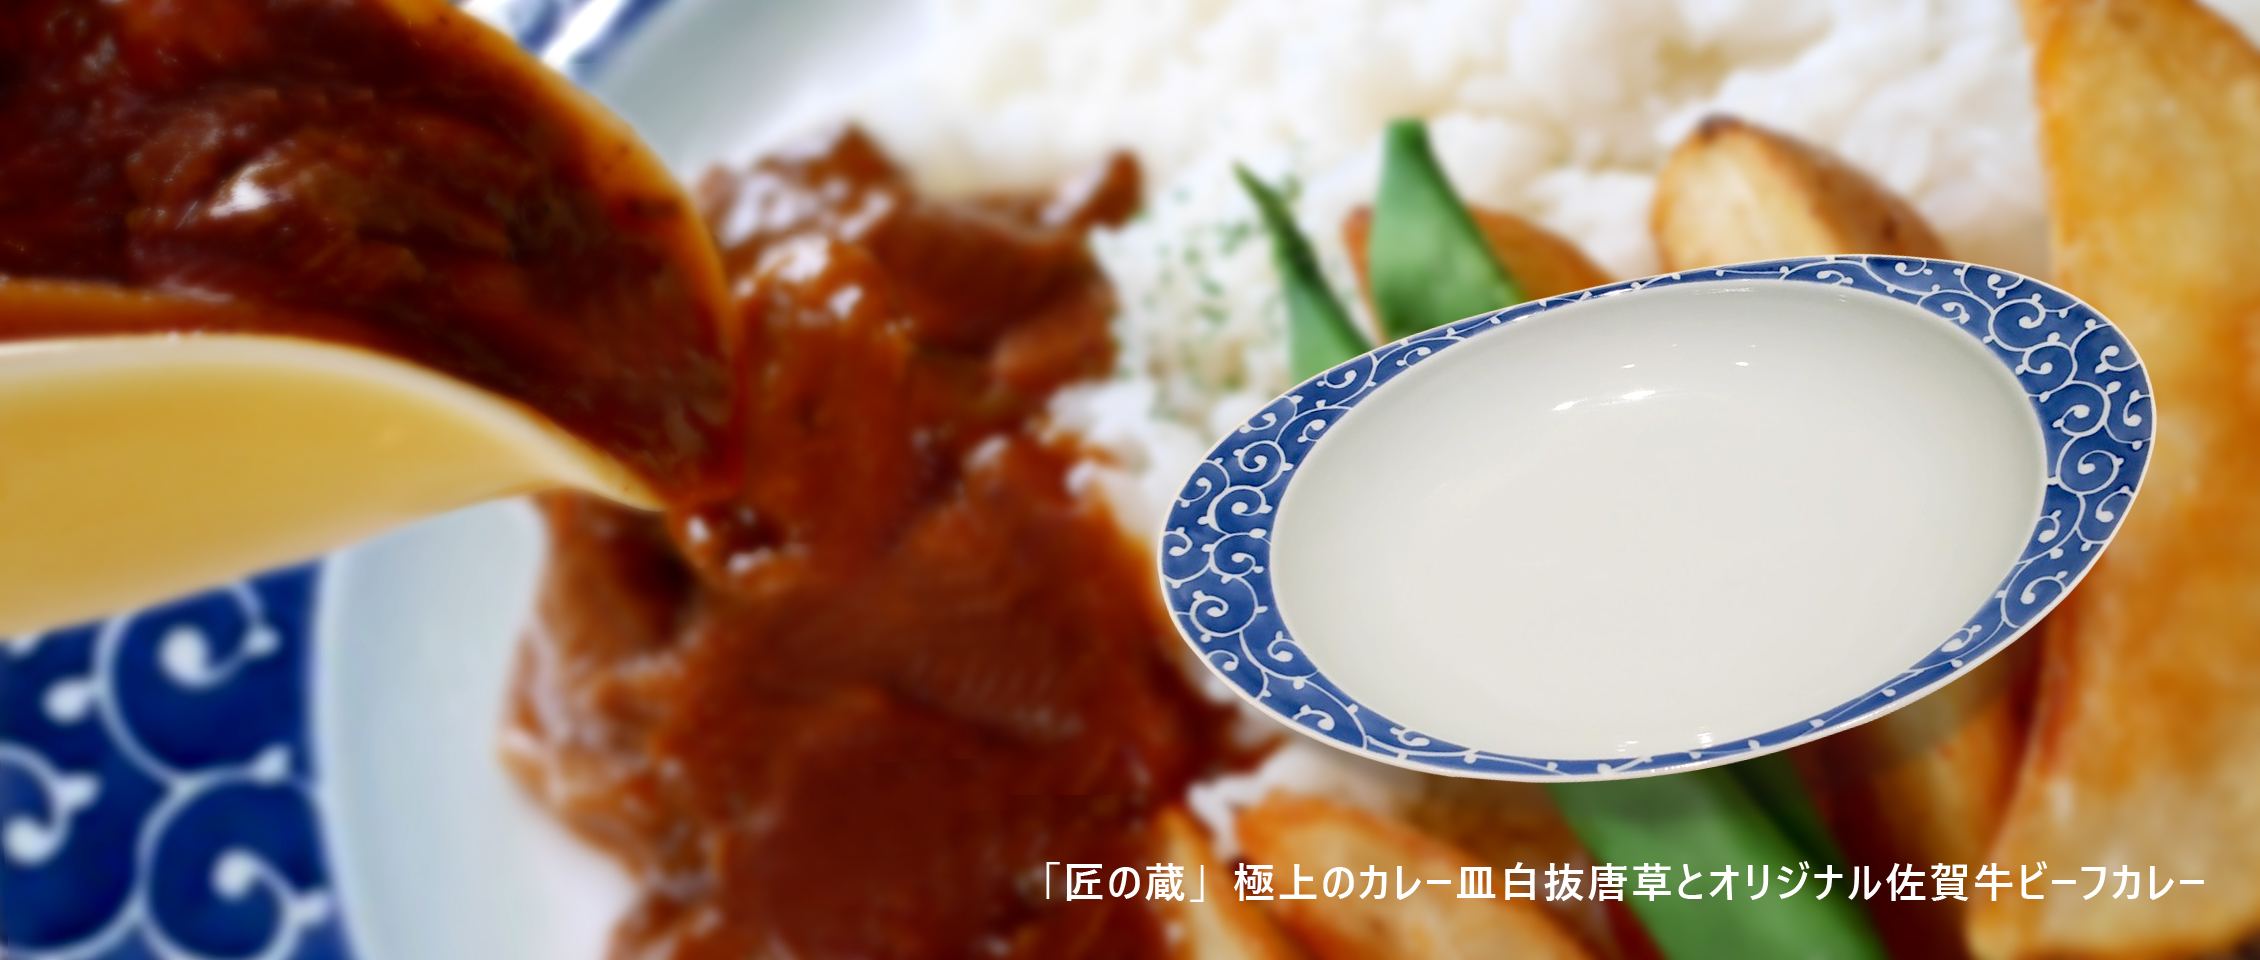 「匠の蔵」極上のカレー皿とホテルオリジナル佐賀牛ビーフカレのセットです。